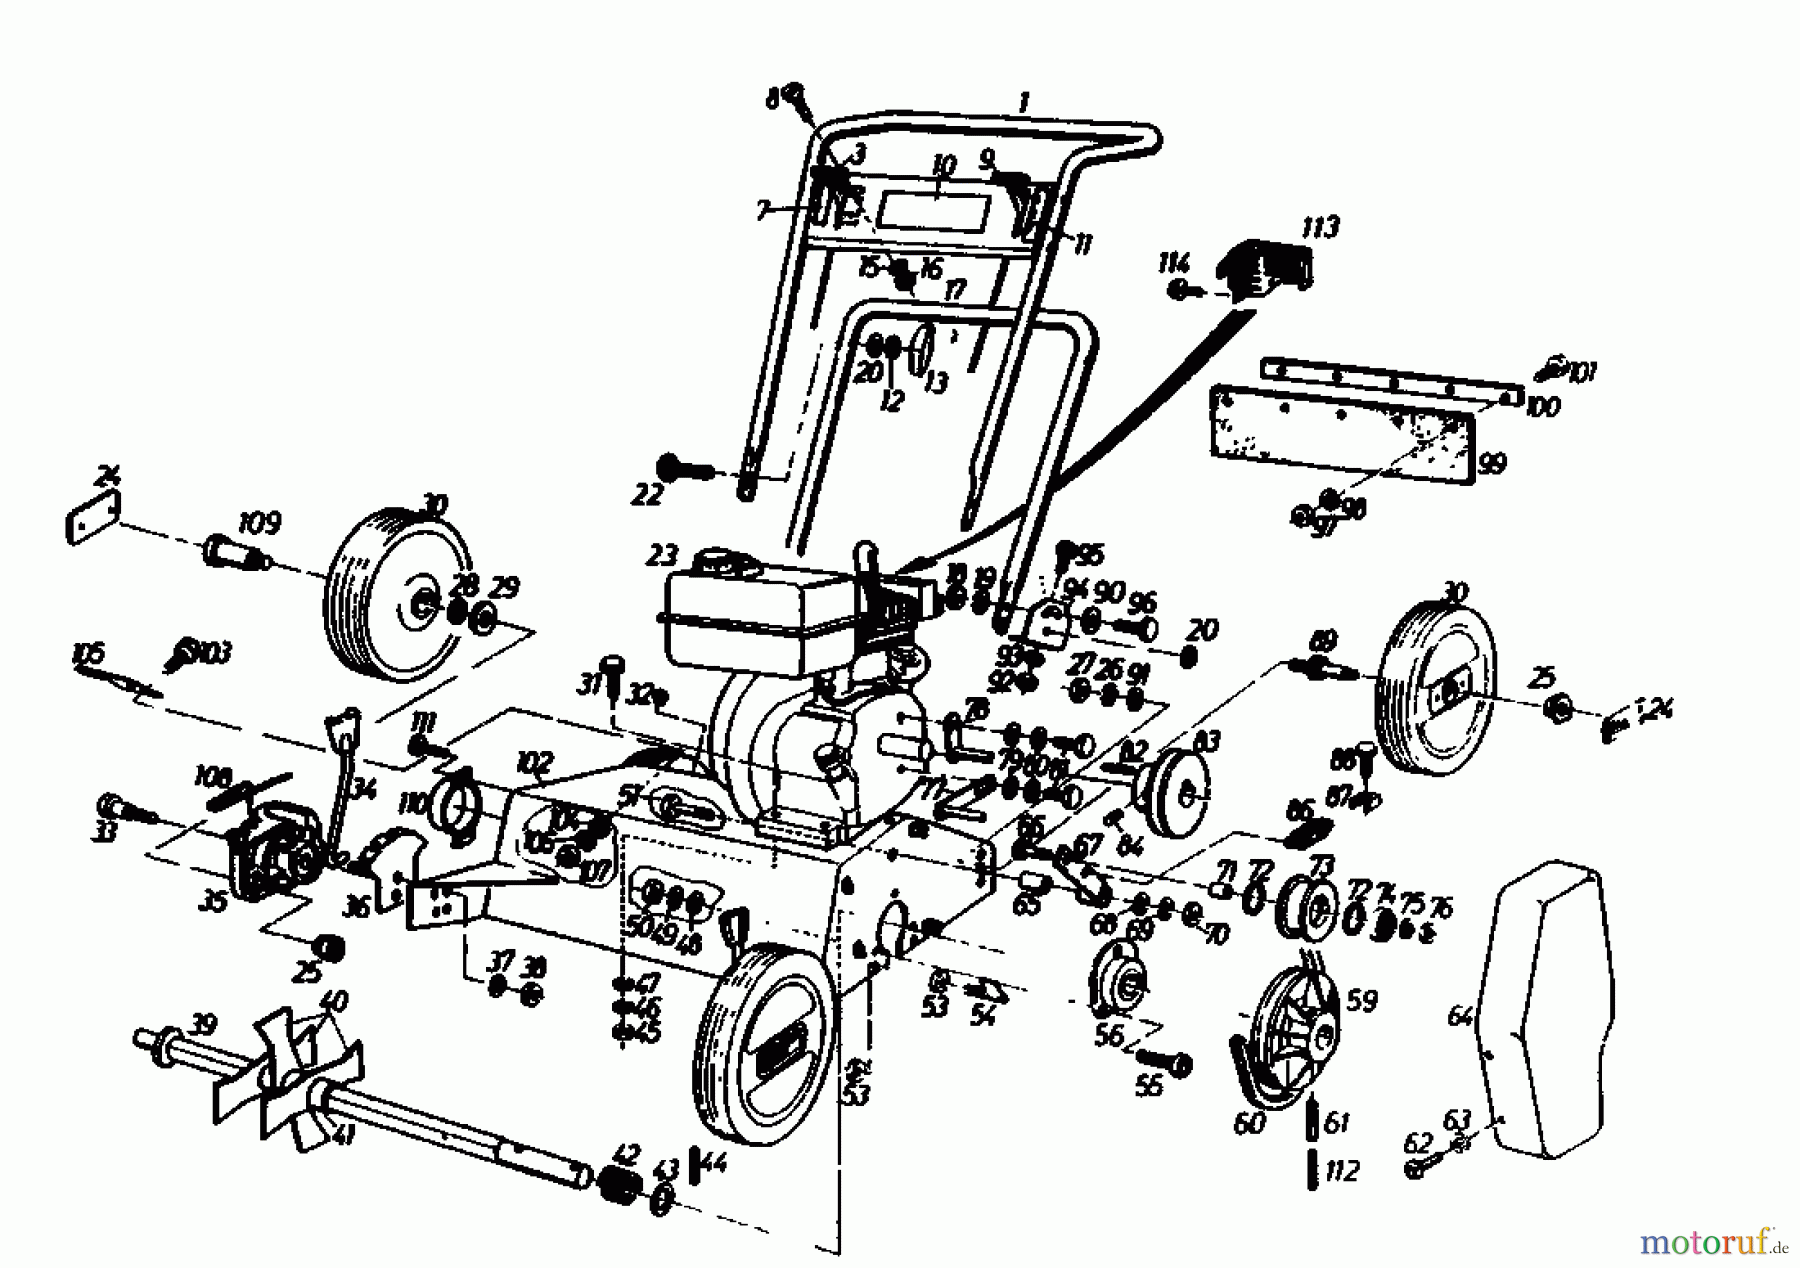  Golf Scarificateur thermique 140 V 4 00054.05  (1986) Machine de base